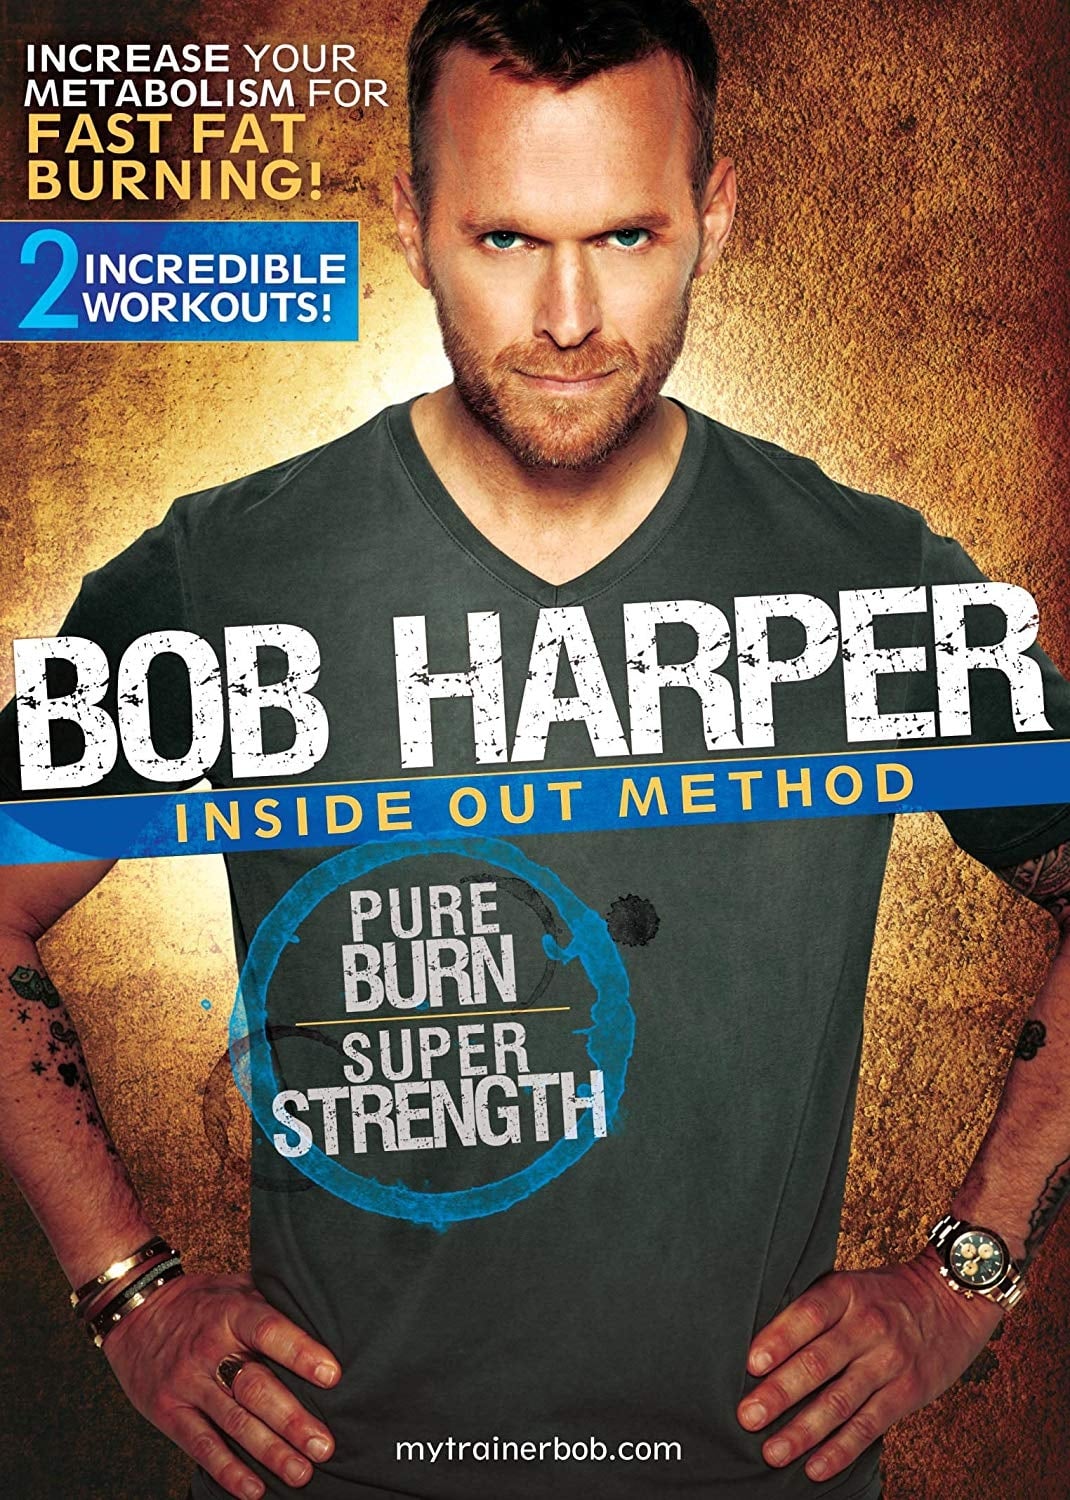 Bob Harper: Inside Out Method - Pure Burn, Super Strength Workout 1